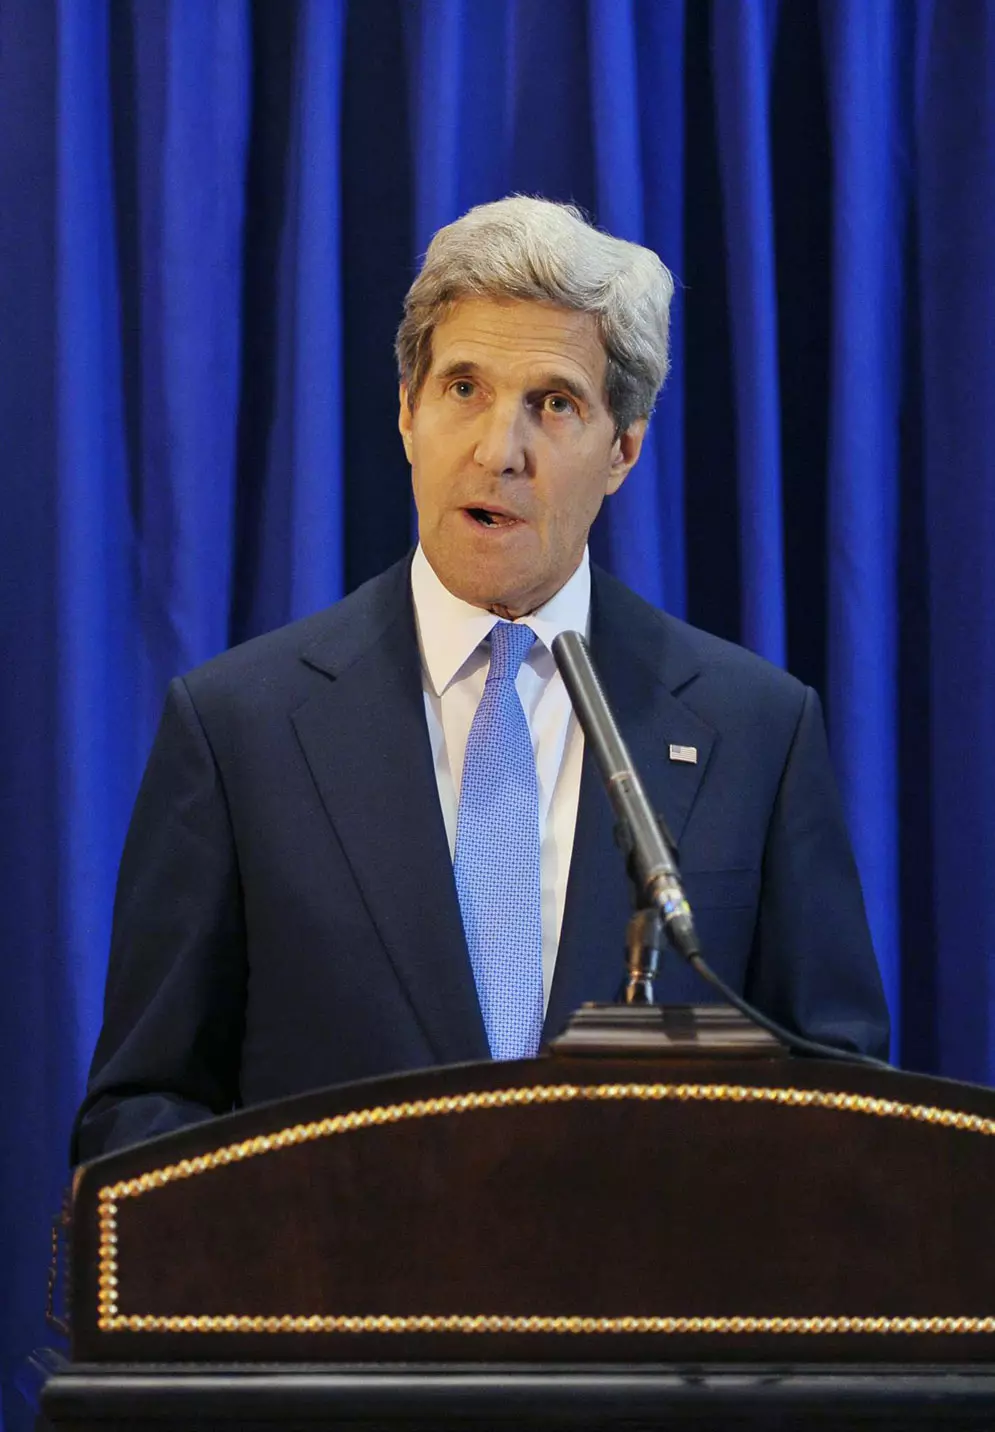 שר החוץ האמריקני, ג'ון קרי. הצבא מזהיר מהתערבות בסוריה